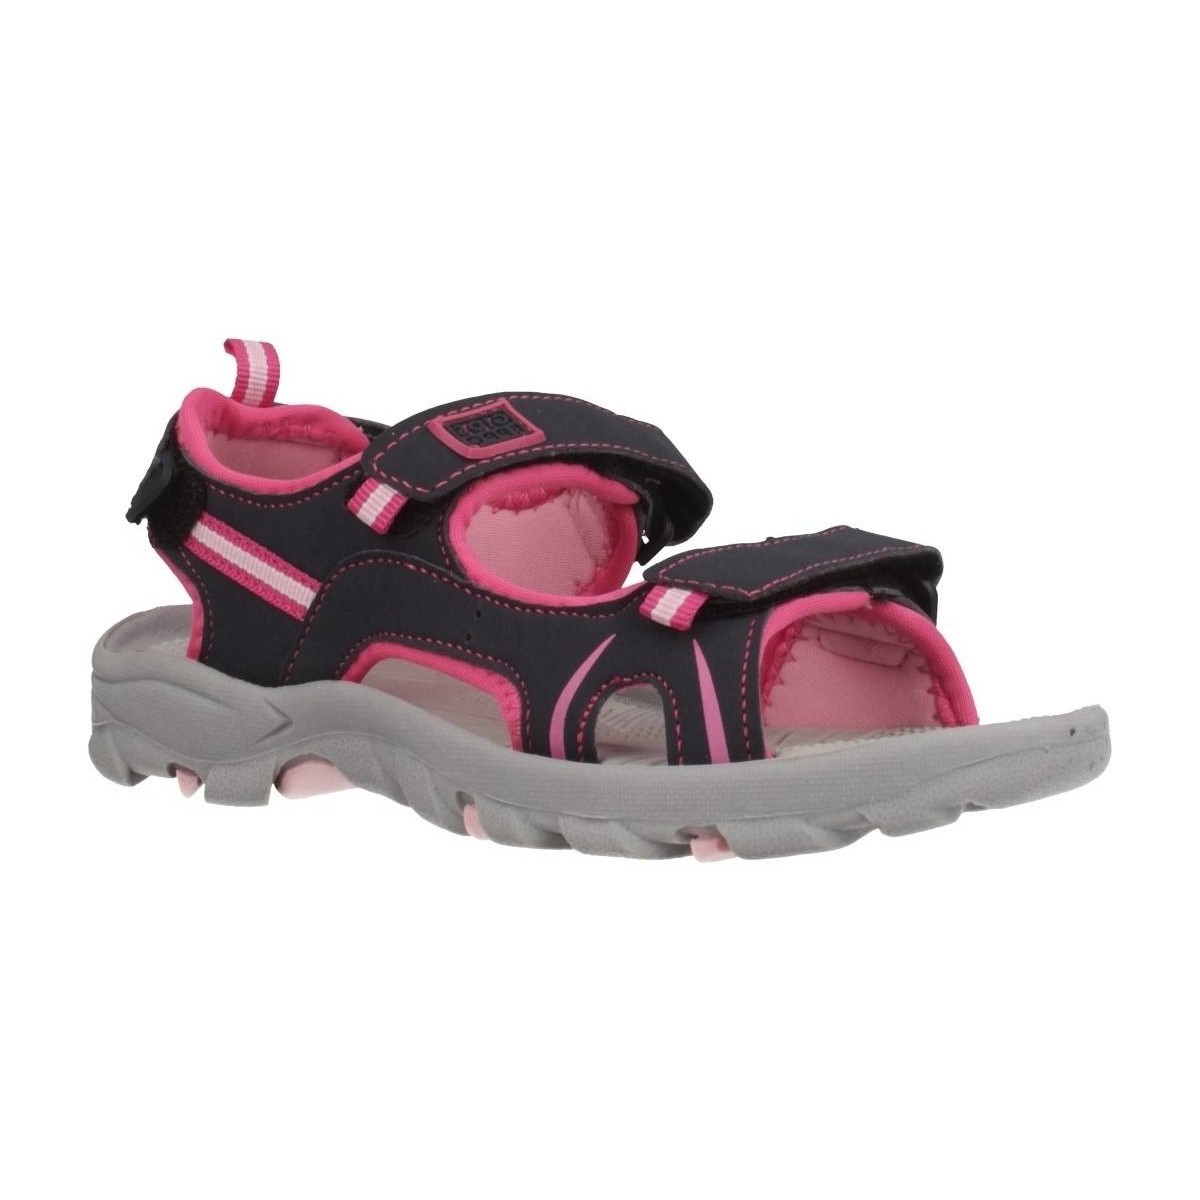 Παπούτσια Κορίτσι Σαγιονάρες Gioseppo 47440G Ροζ